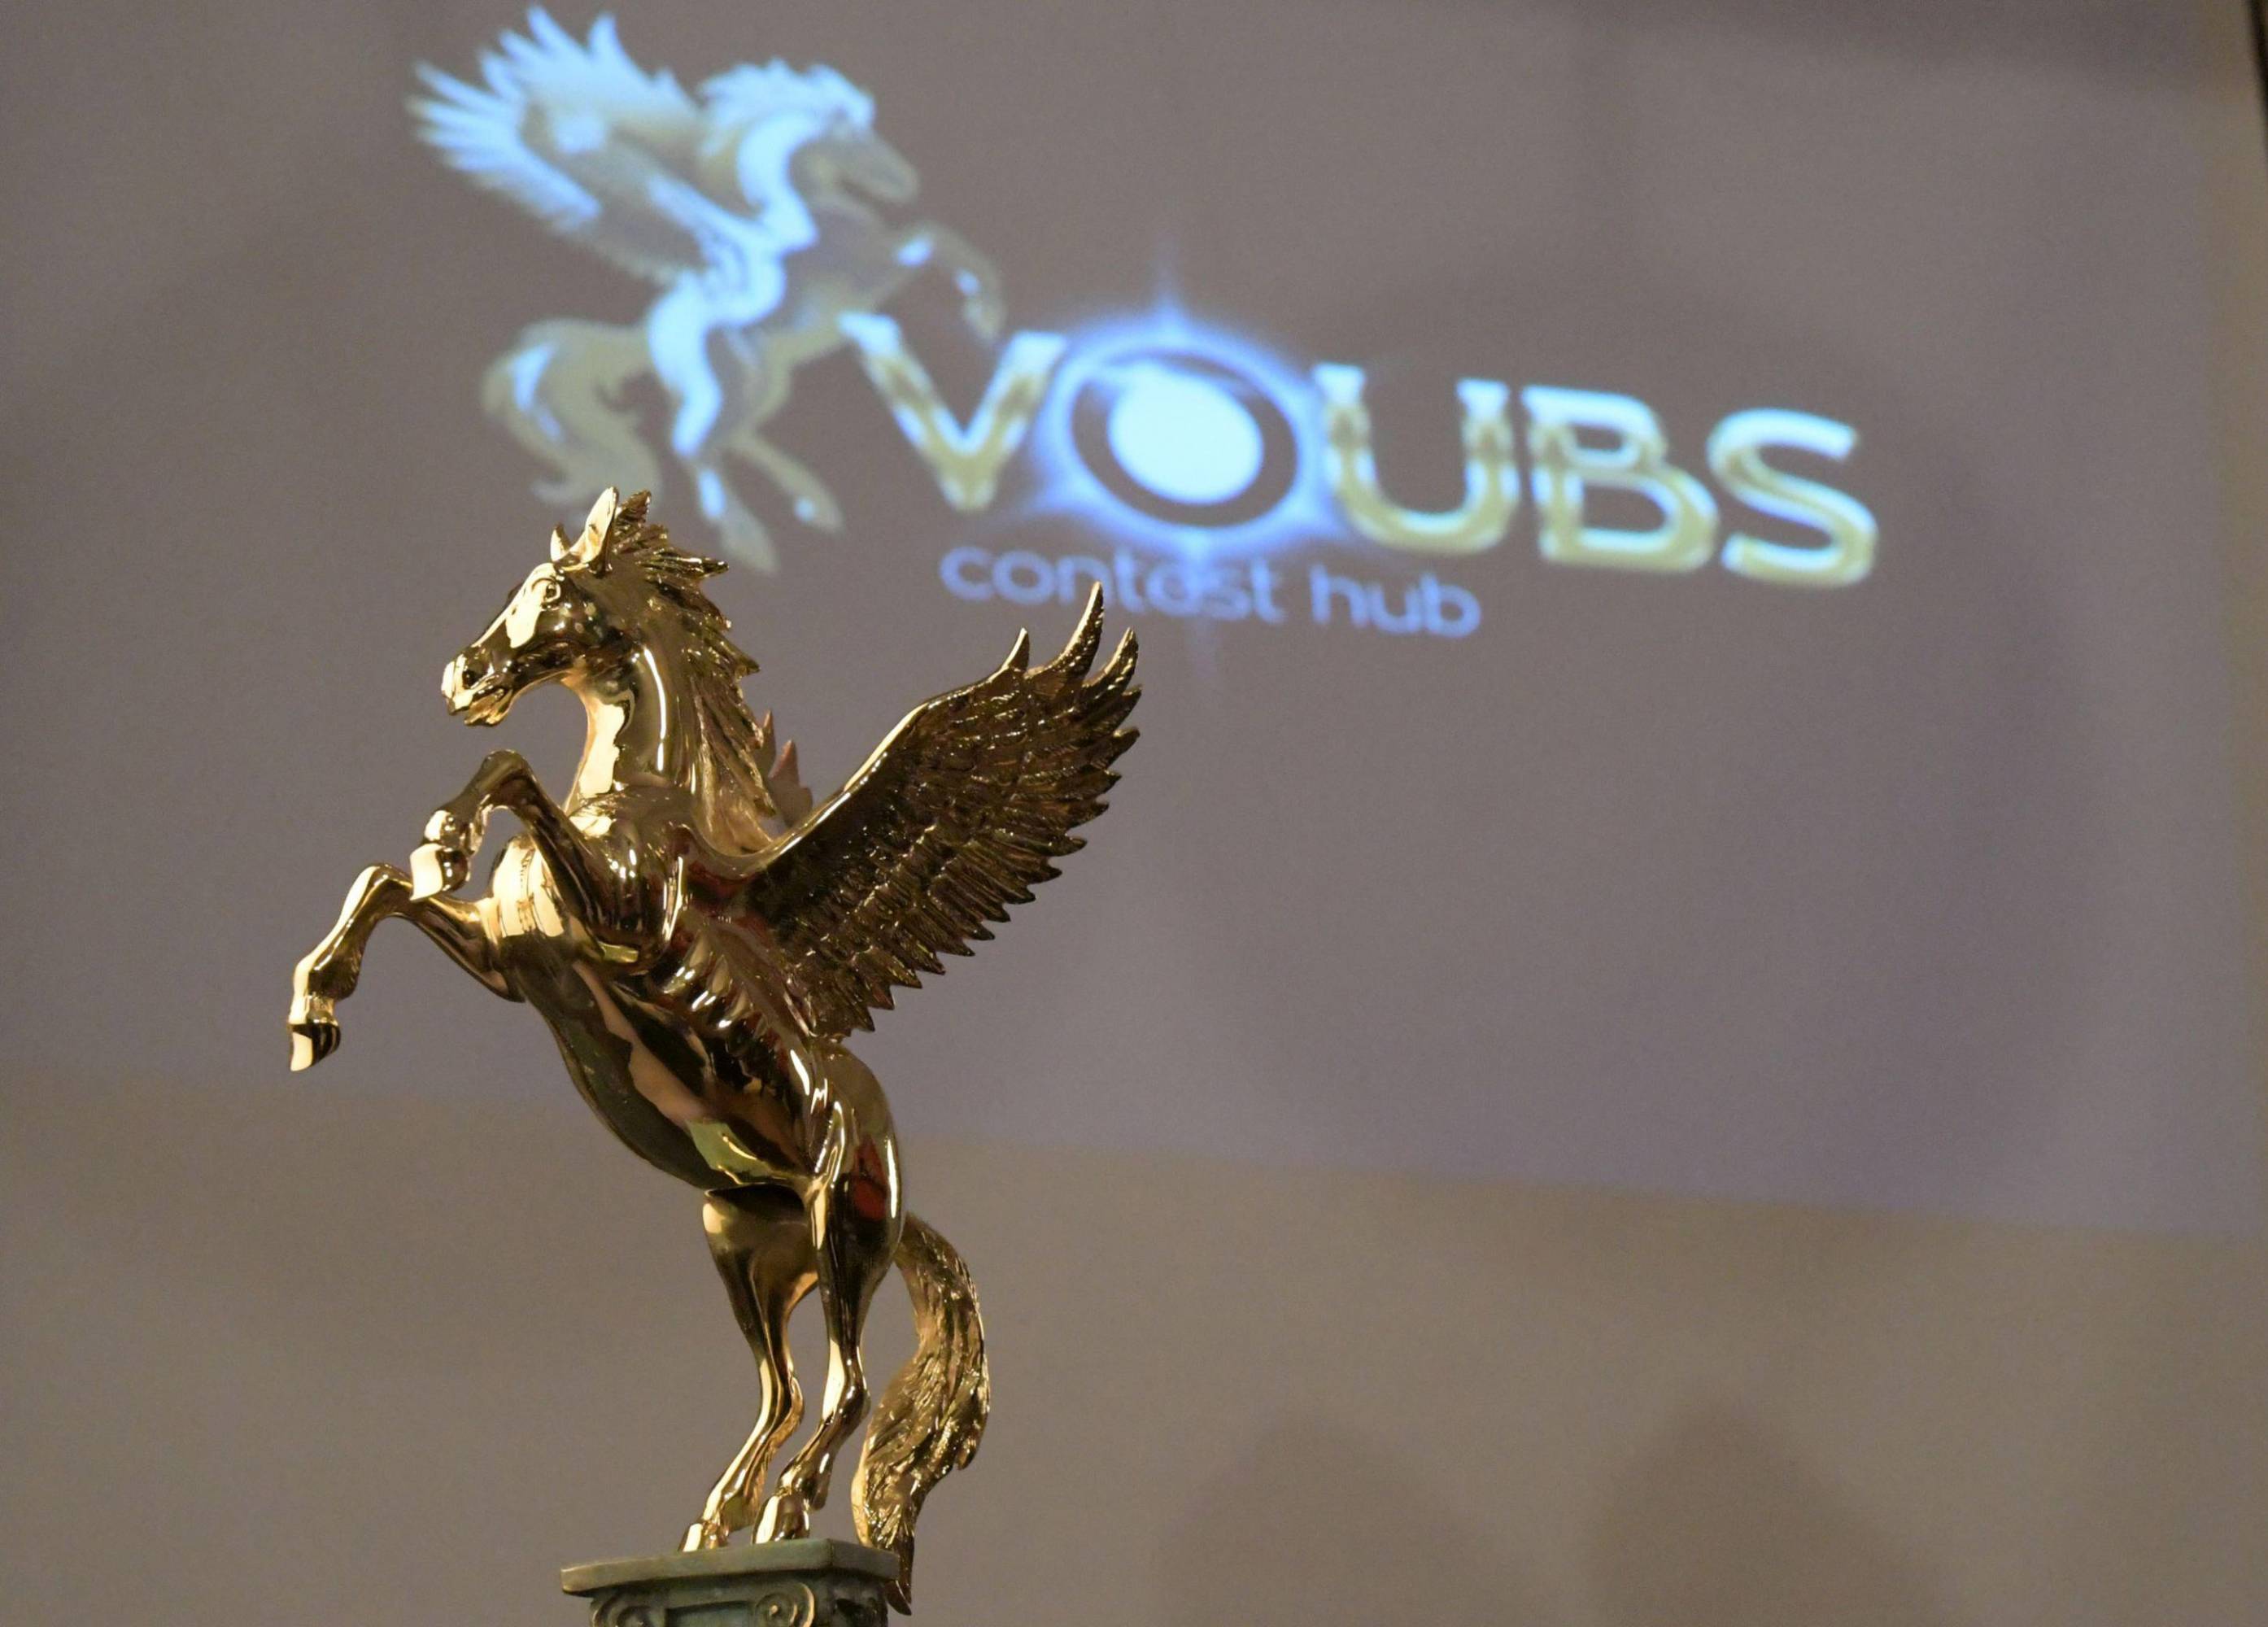 VOUBS: онлайн революцията в света на креативните конкурси